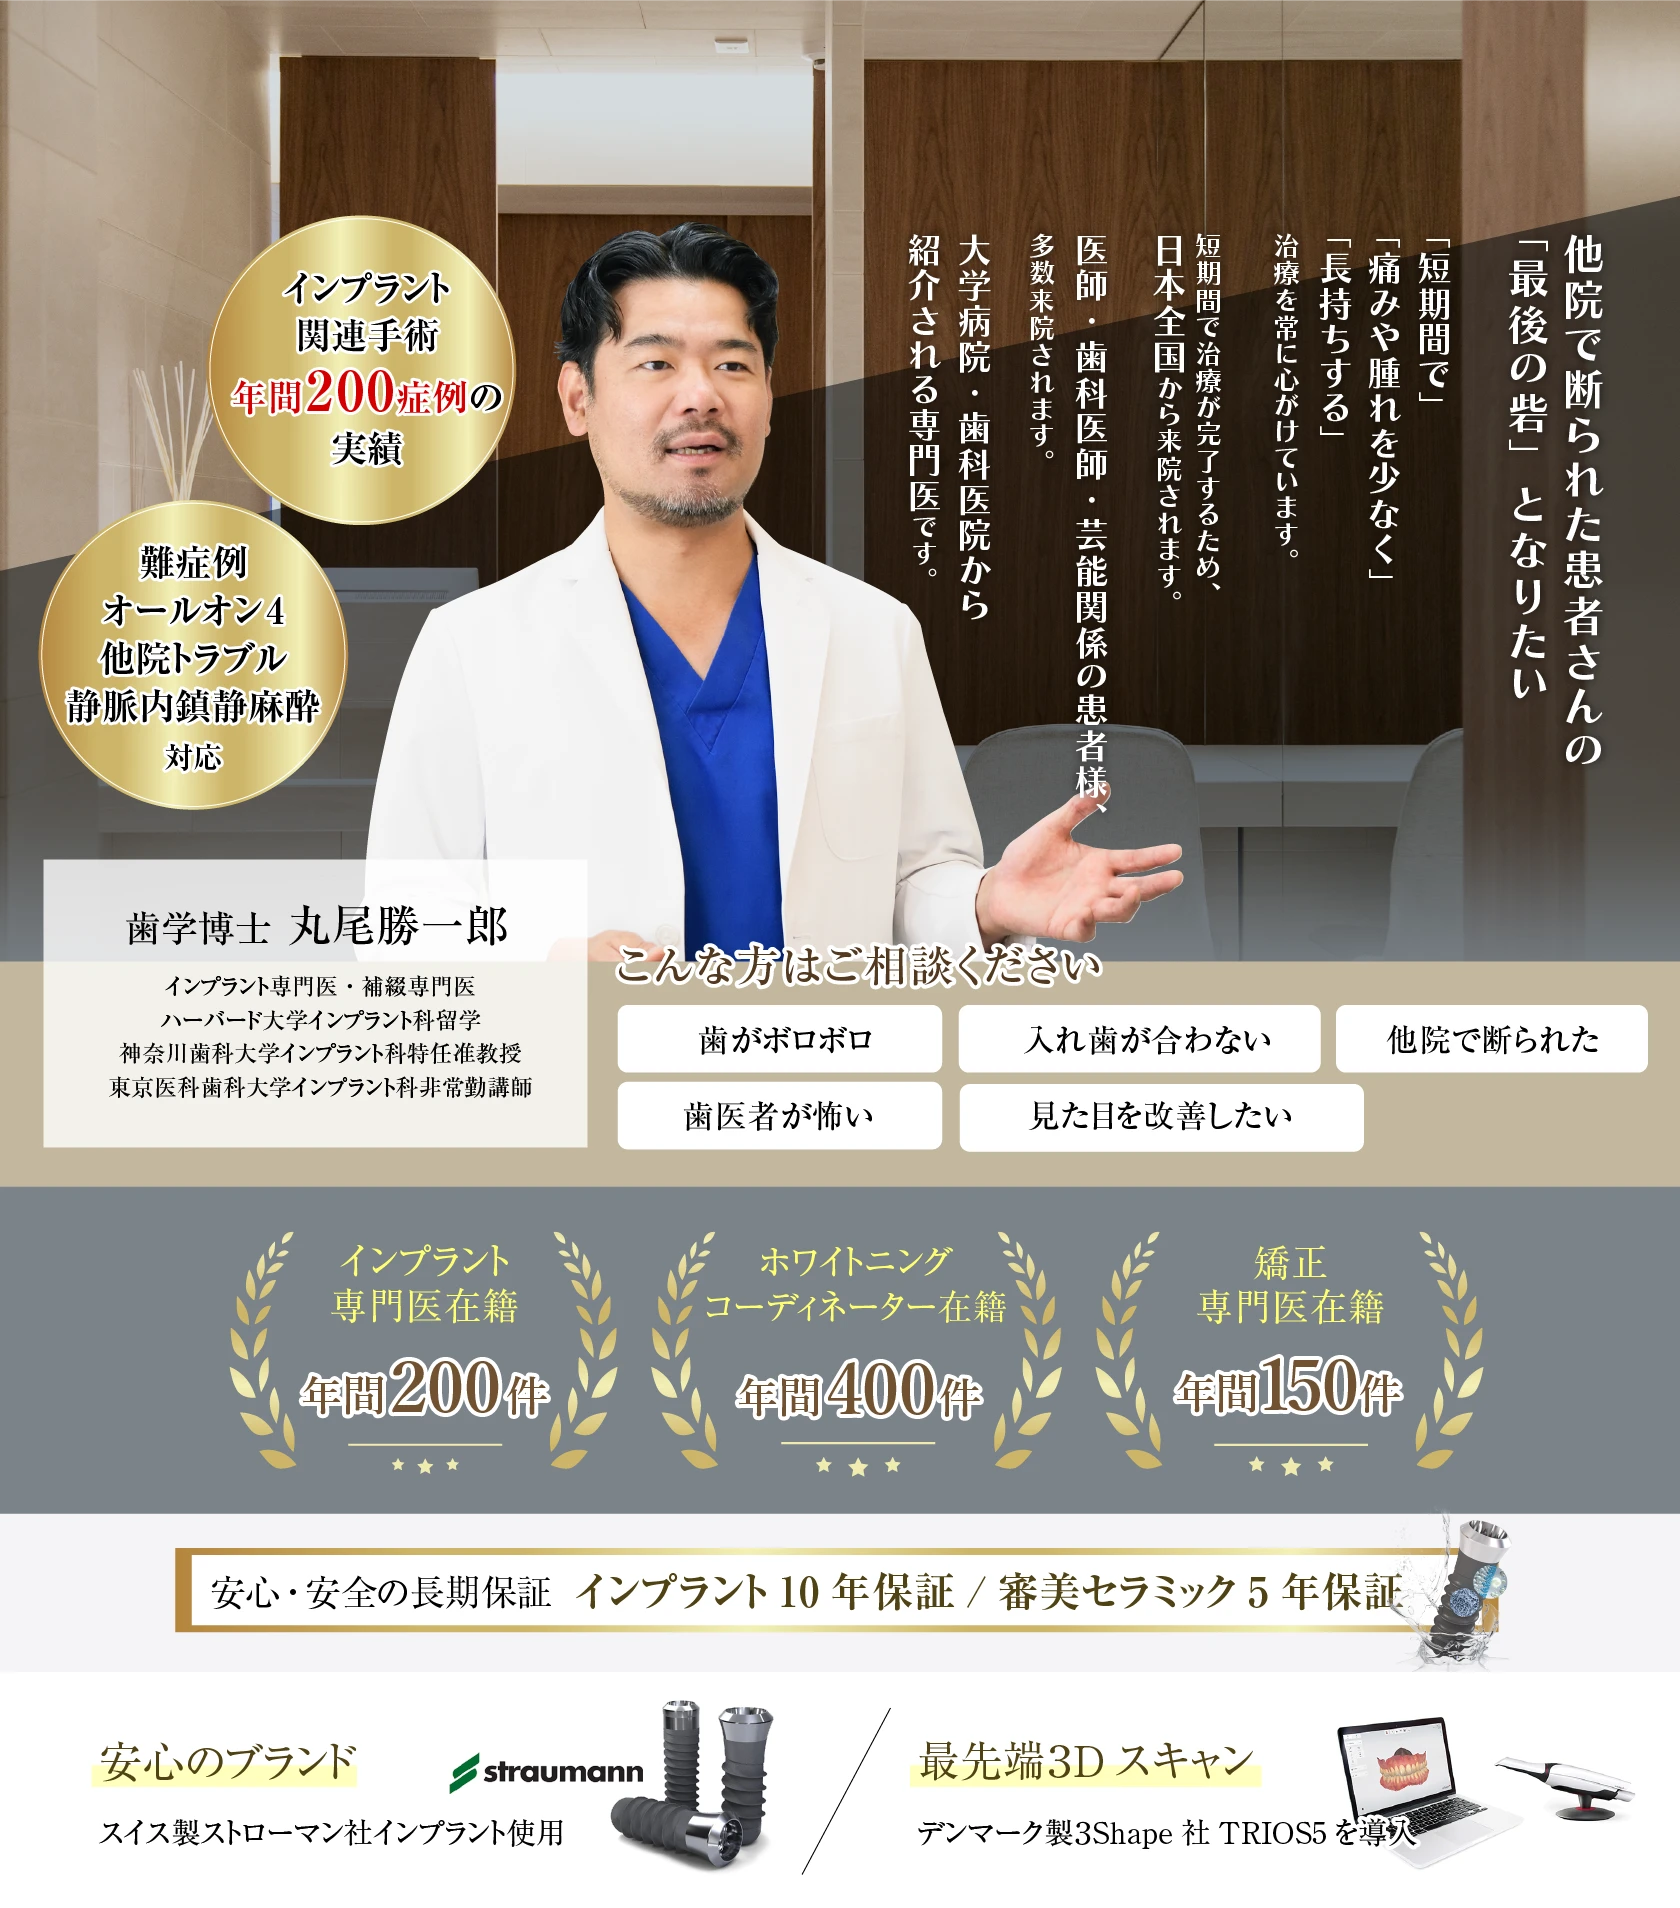 恵比寿マルオ歯科は、恵比寿駅から徒歩2分の歯医者です。専門医によるホワイトニング・審美セラミック治療・矯正・インプラントを行っています。